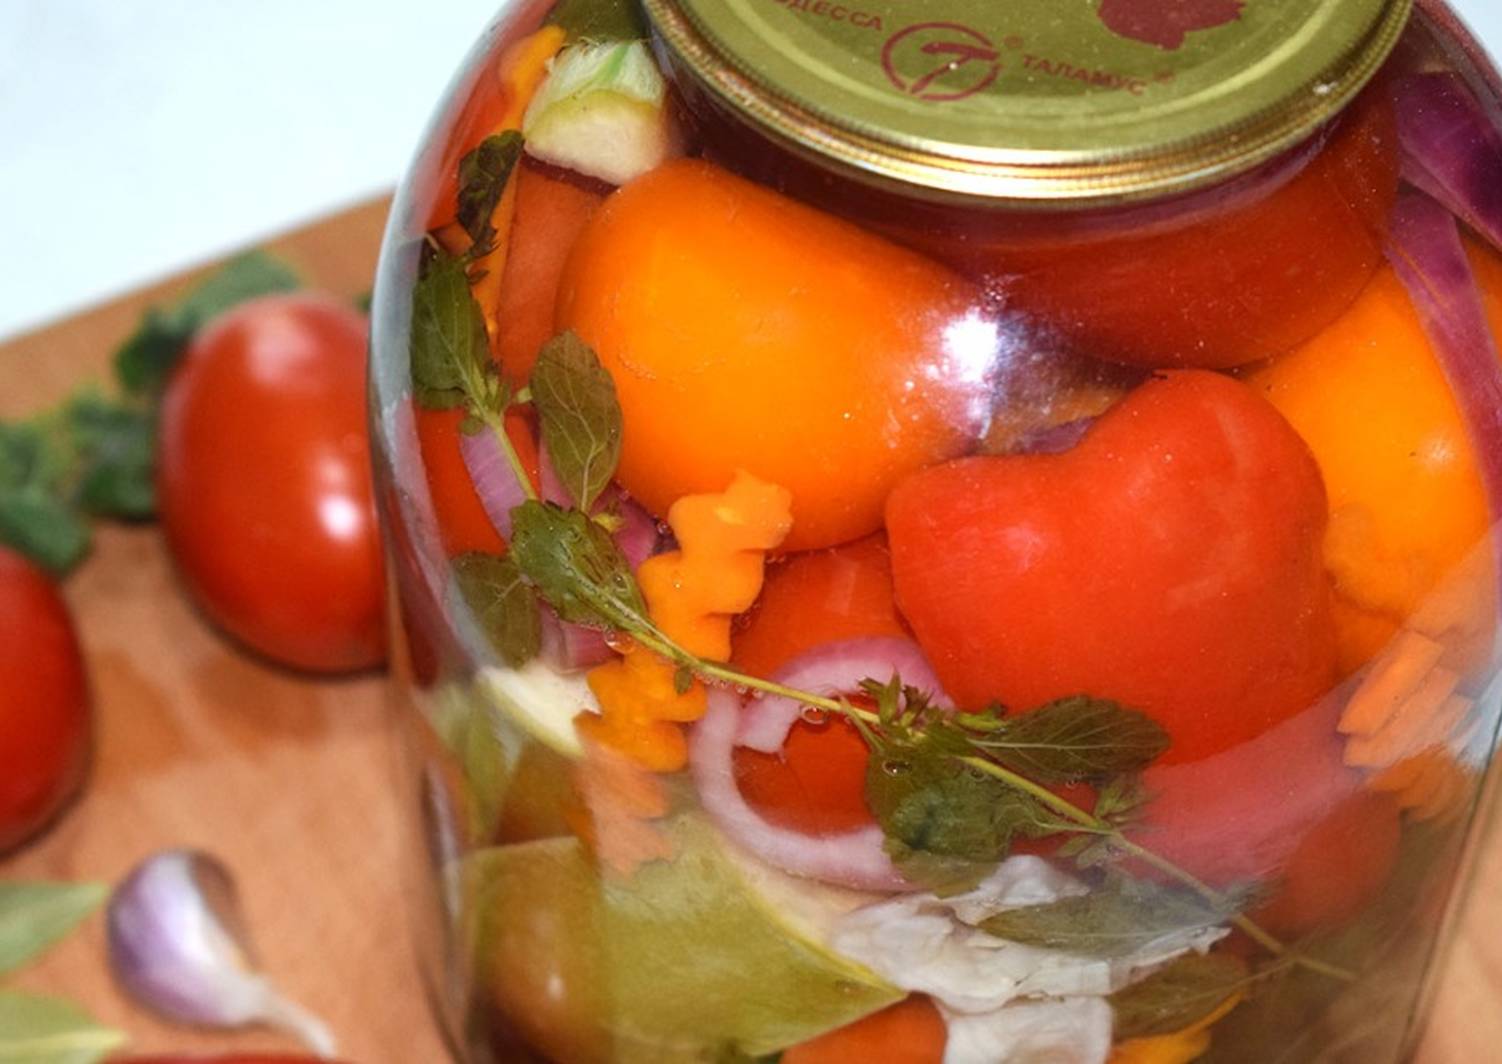 Рецепт вкусного ассорти из огурцов и помидоров на зиму: маринованные, консервированные и соленые в бочках видео